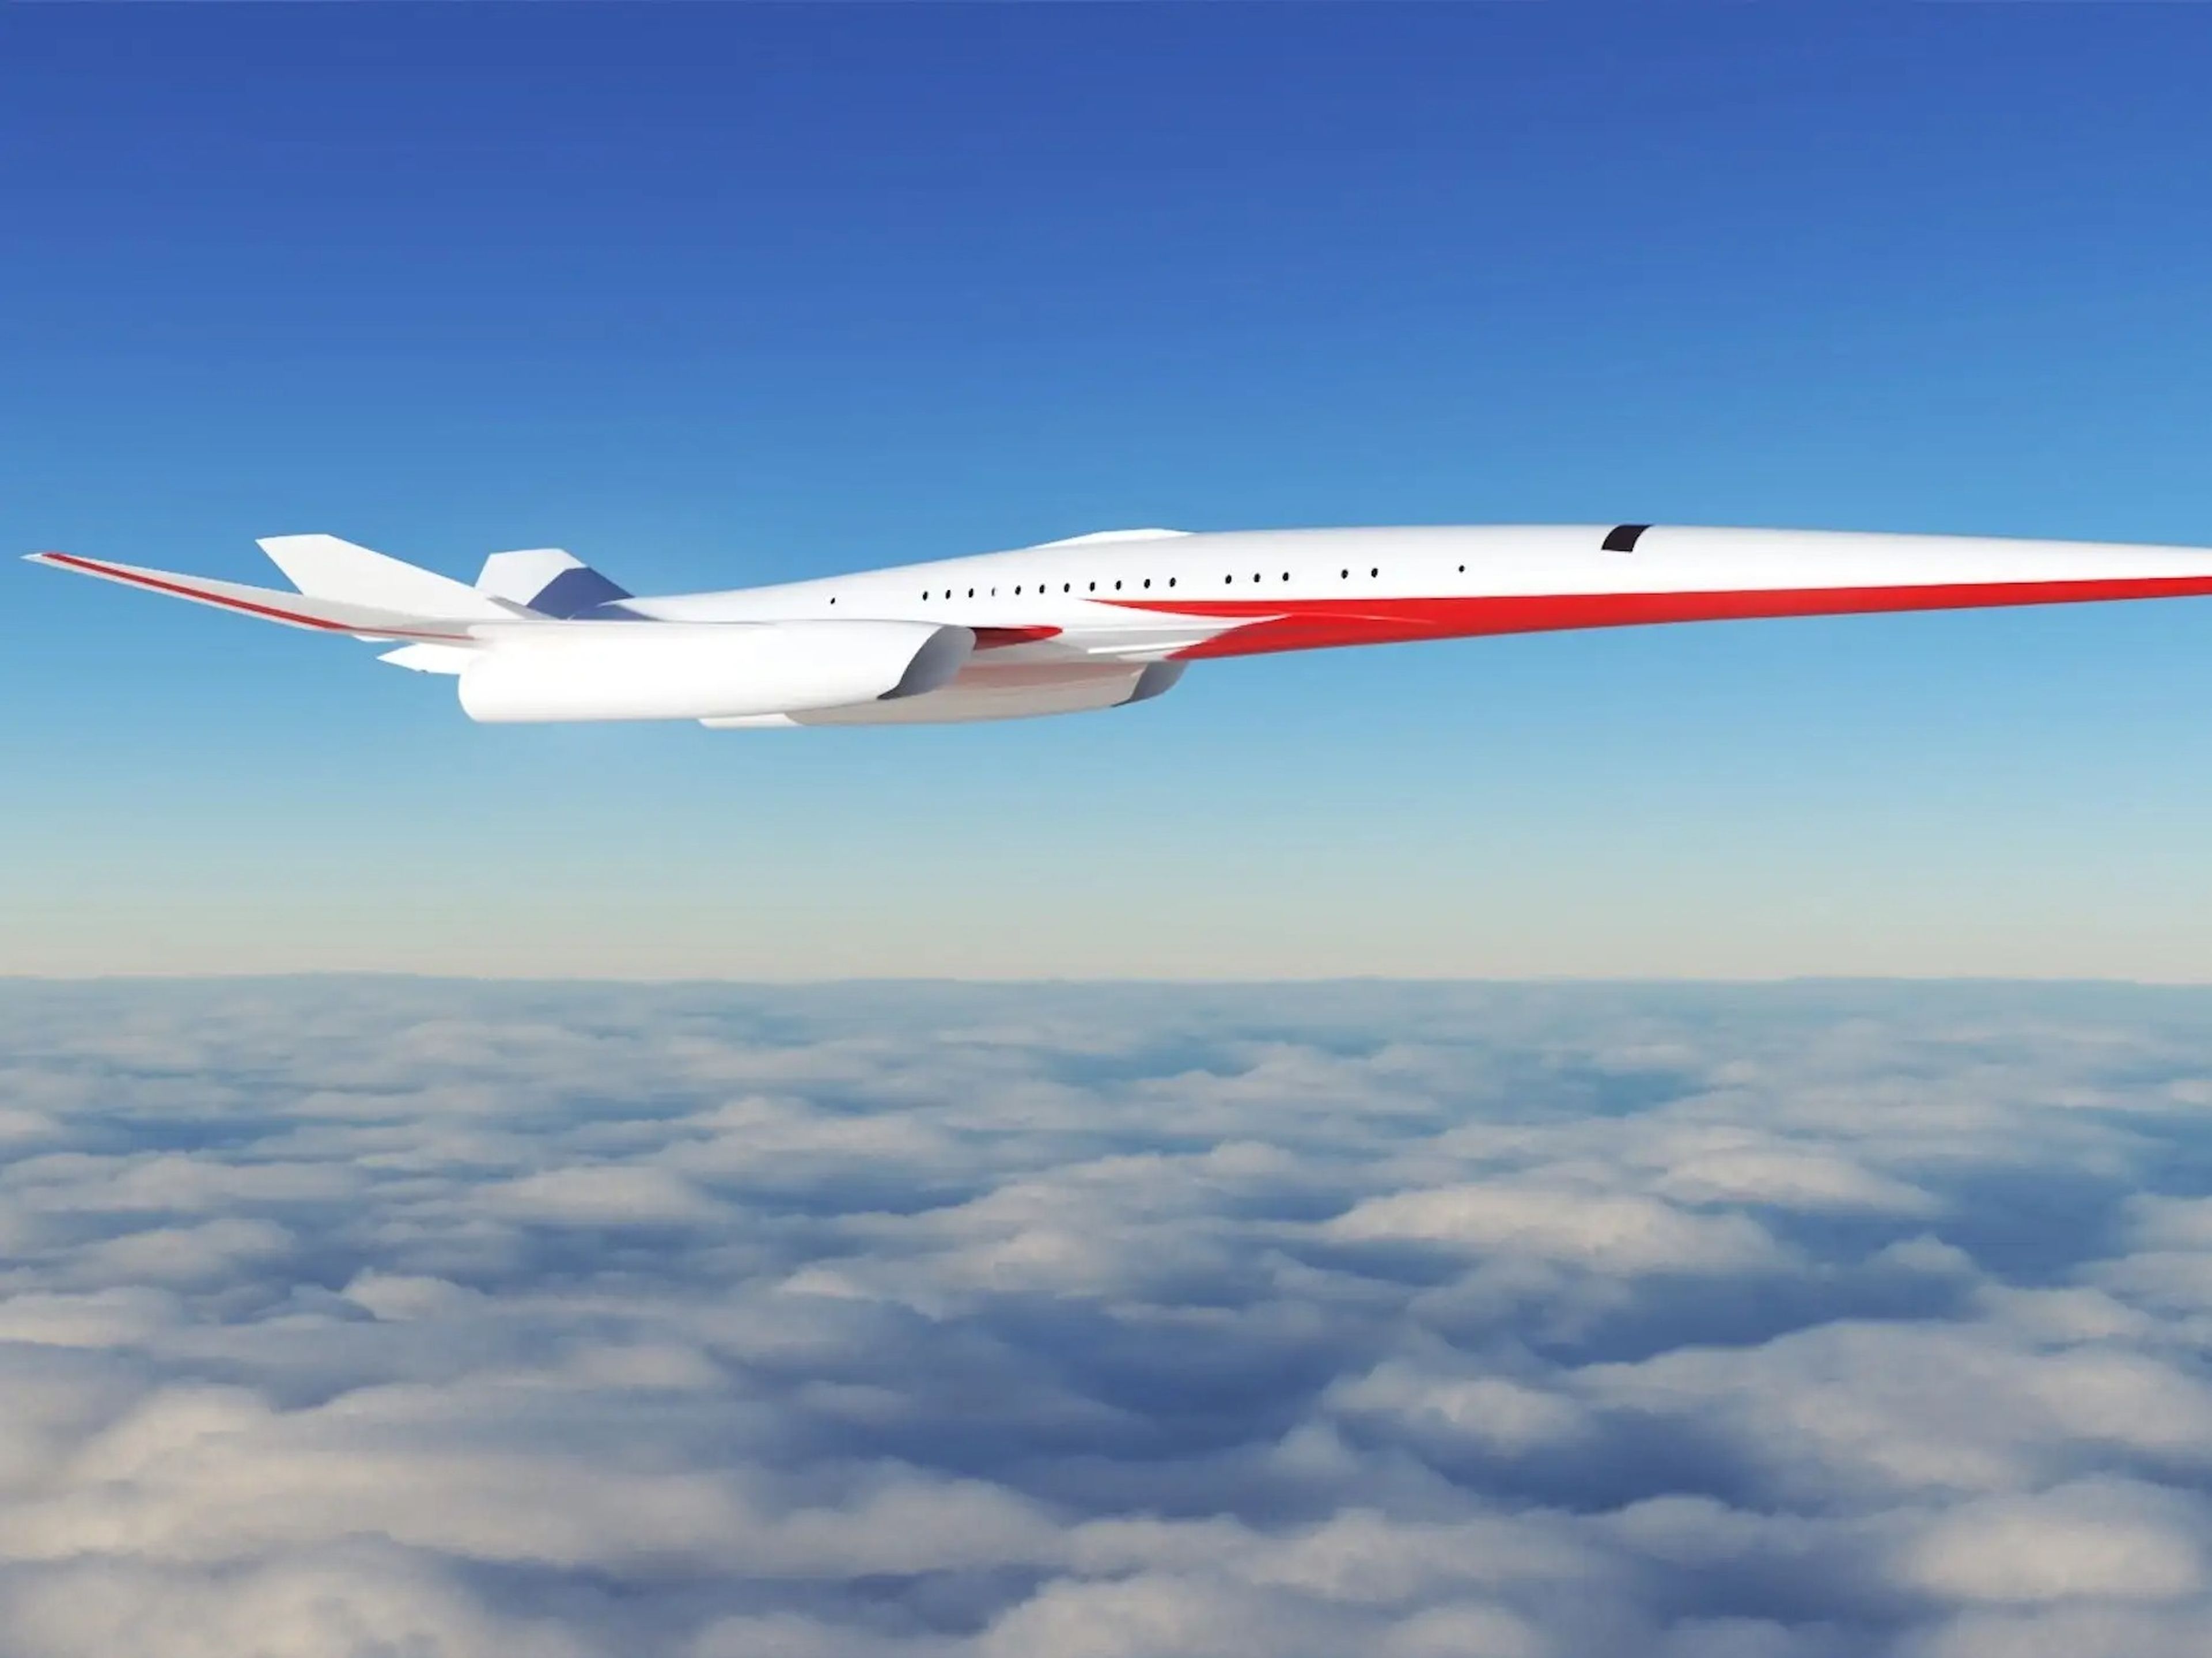 Exosonic supersonic jet.